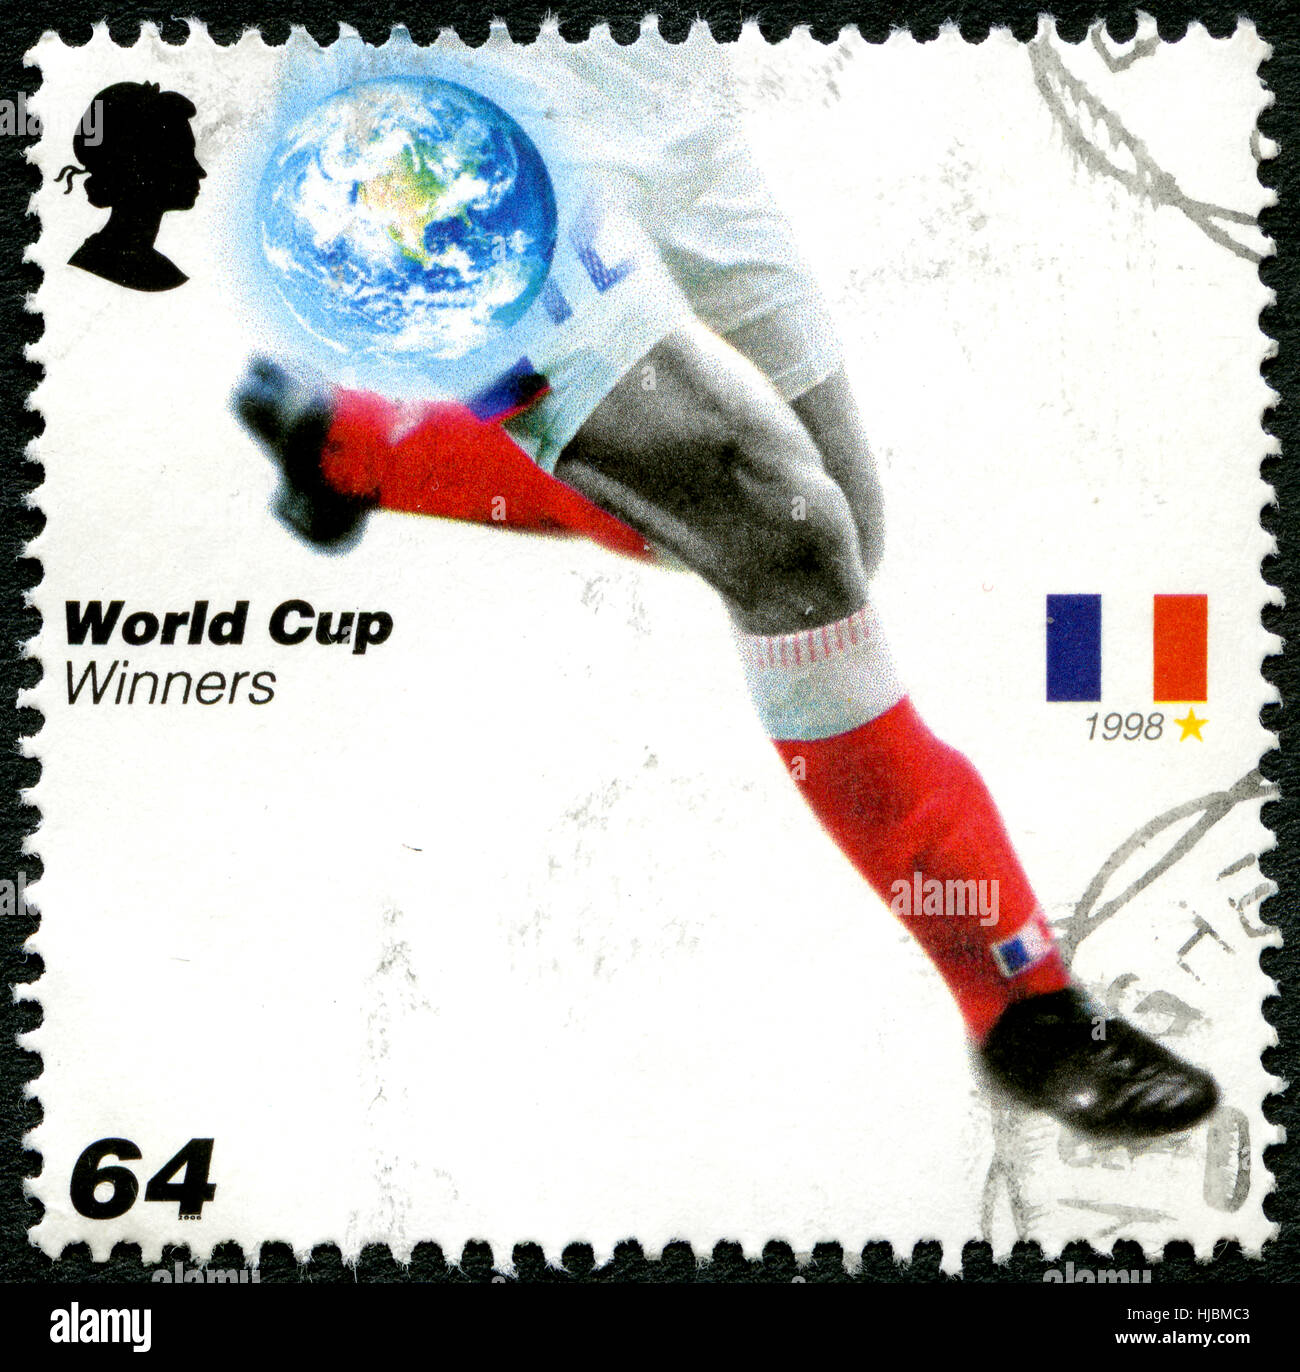 Regno Unito - circa 2006: un usato francobollo DAL REGNO UNITO, rilasciati per commemorare il passato della Coppa del Mondo di calcio vincitori Francia, circa 2006. Foto Stock